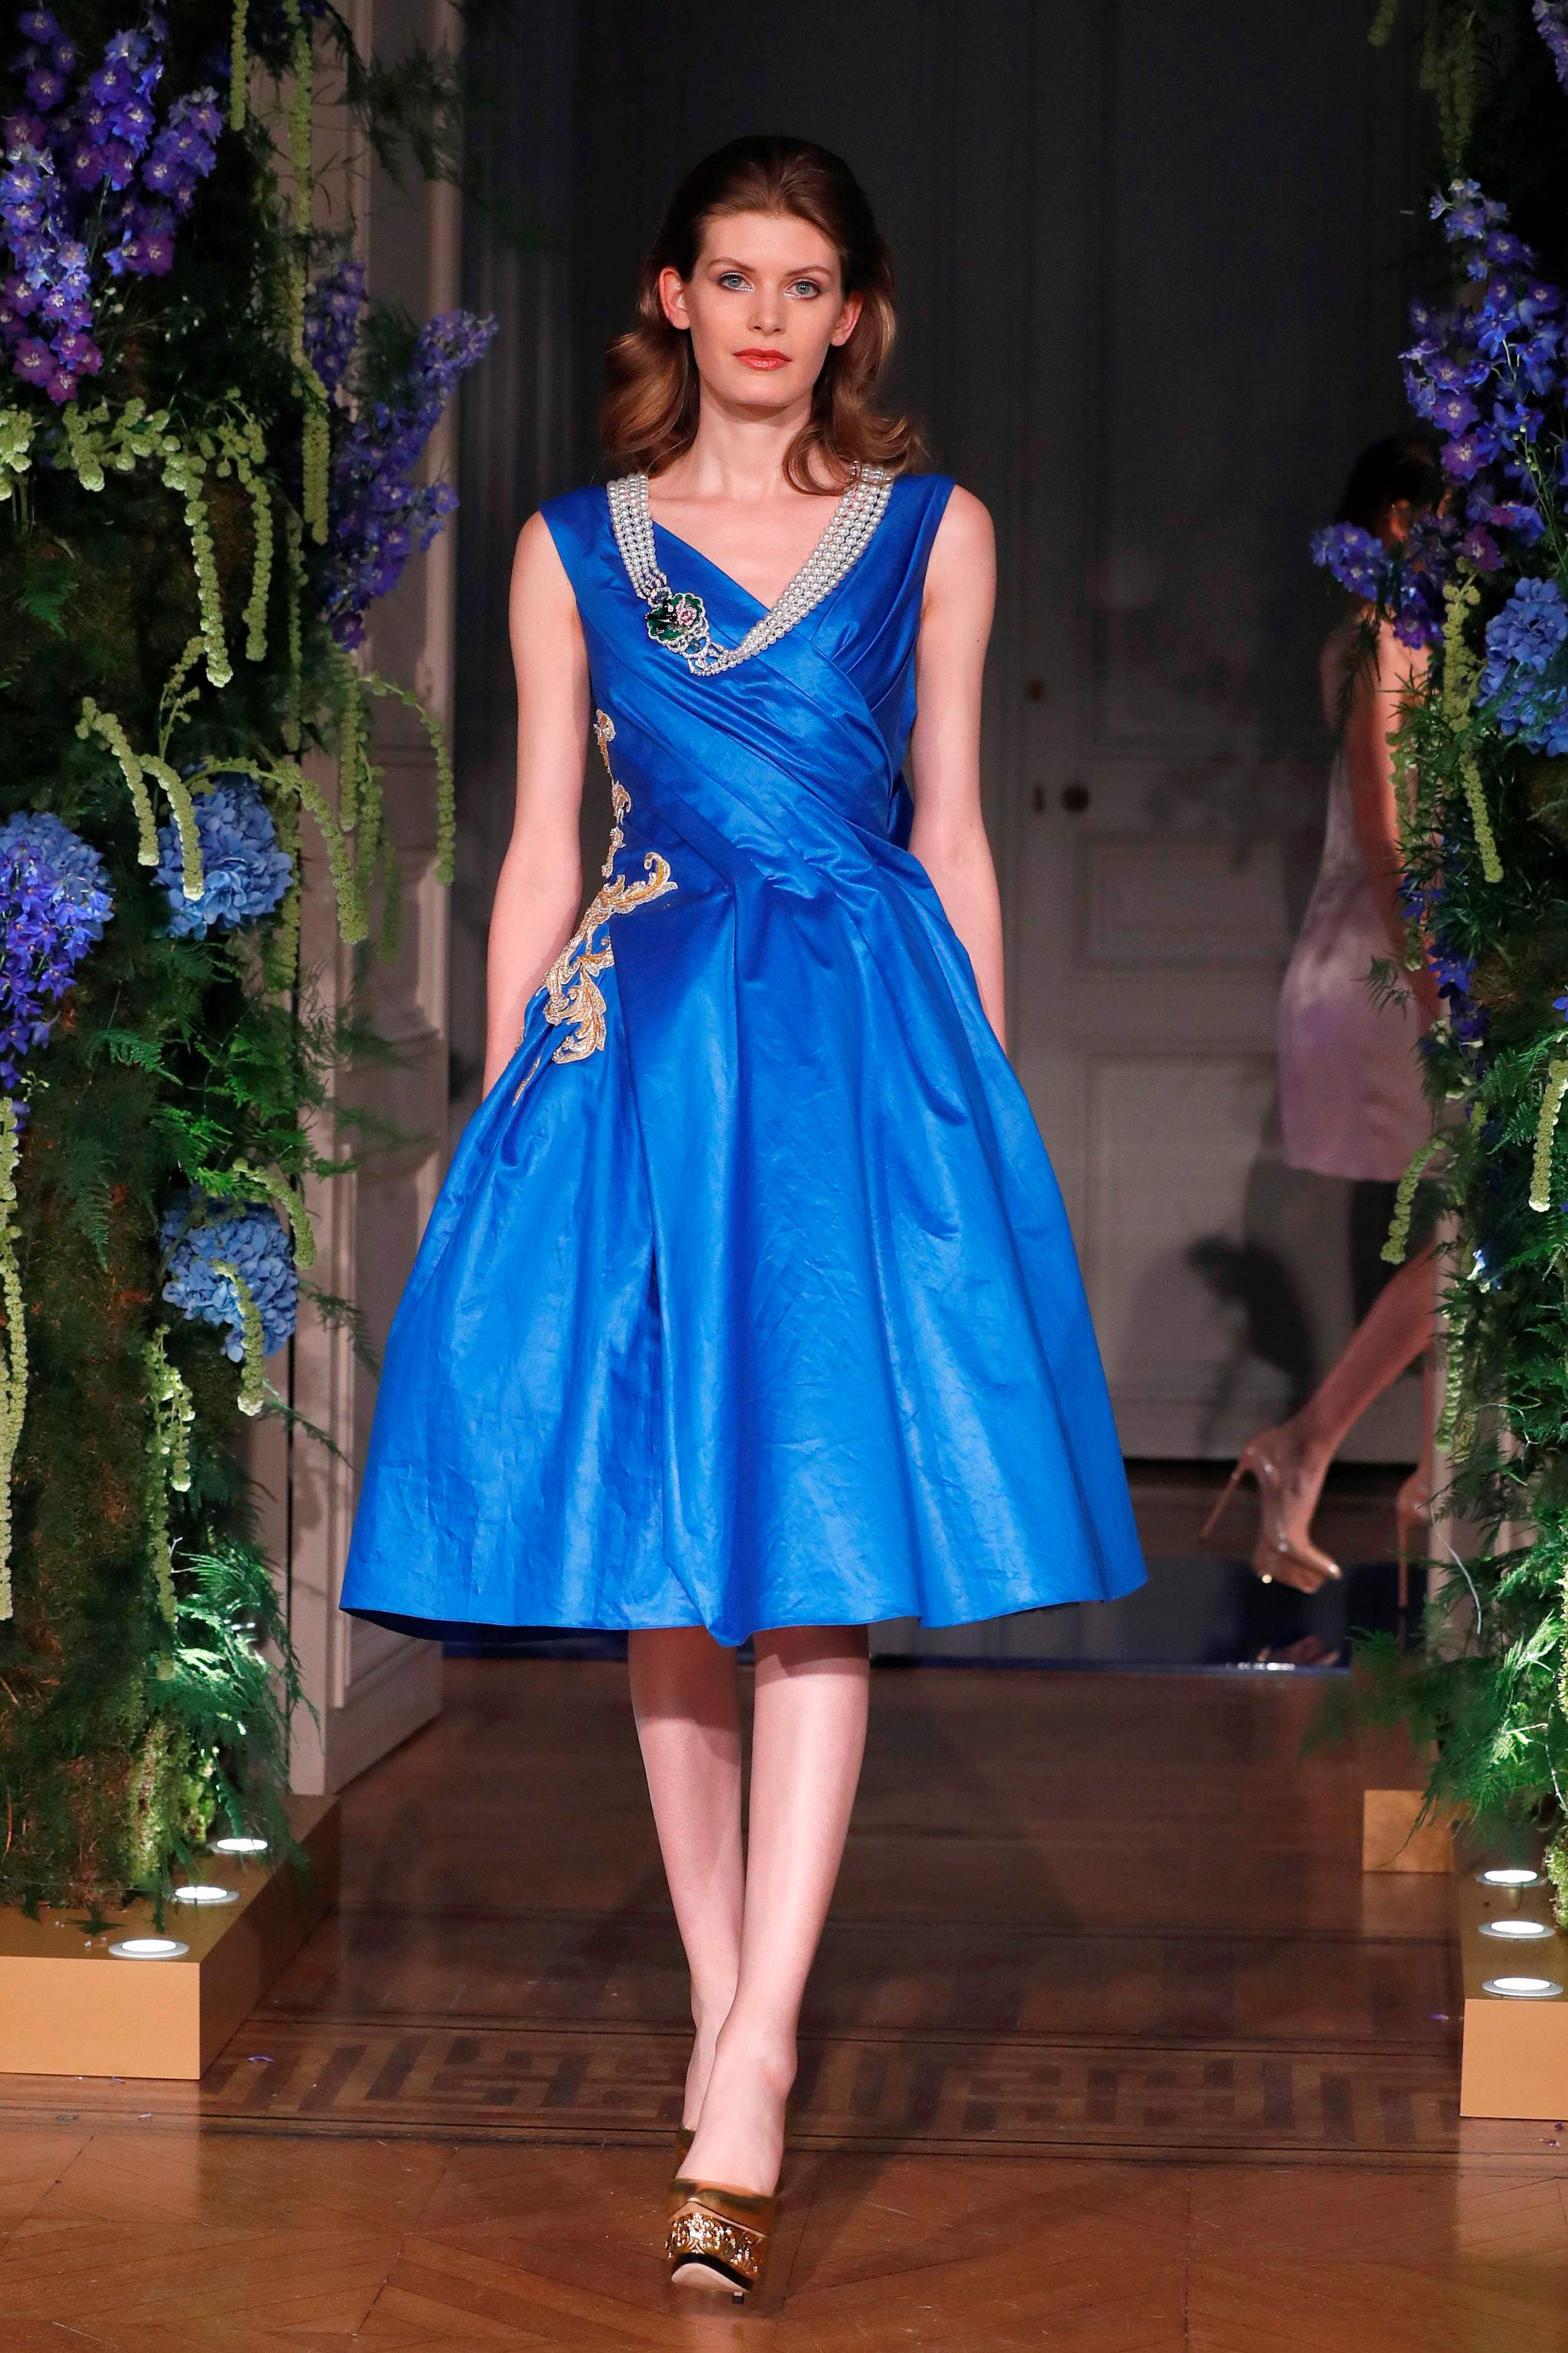               فستان أزرق أنيق من مجموعة جو بان